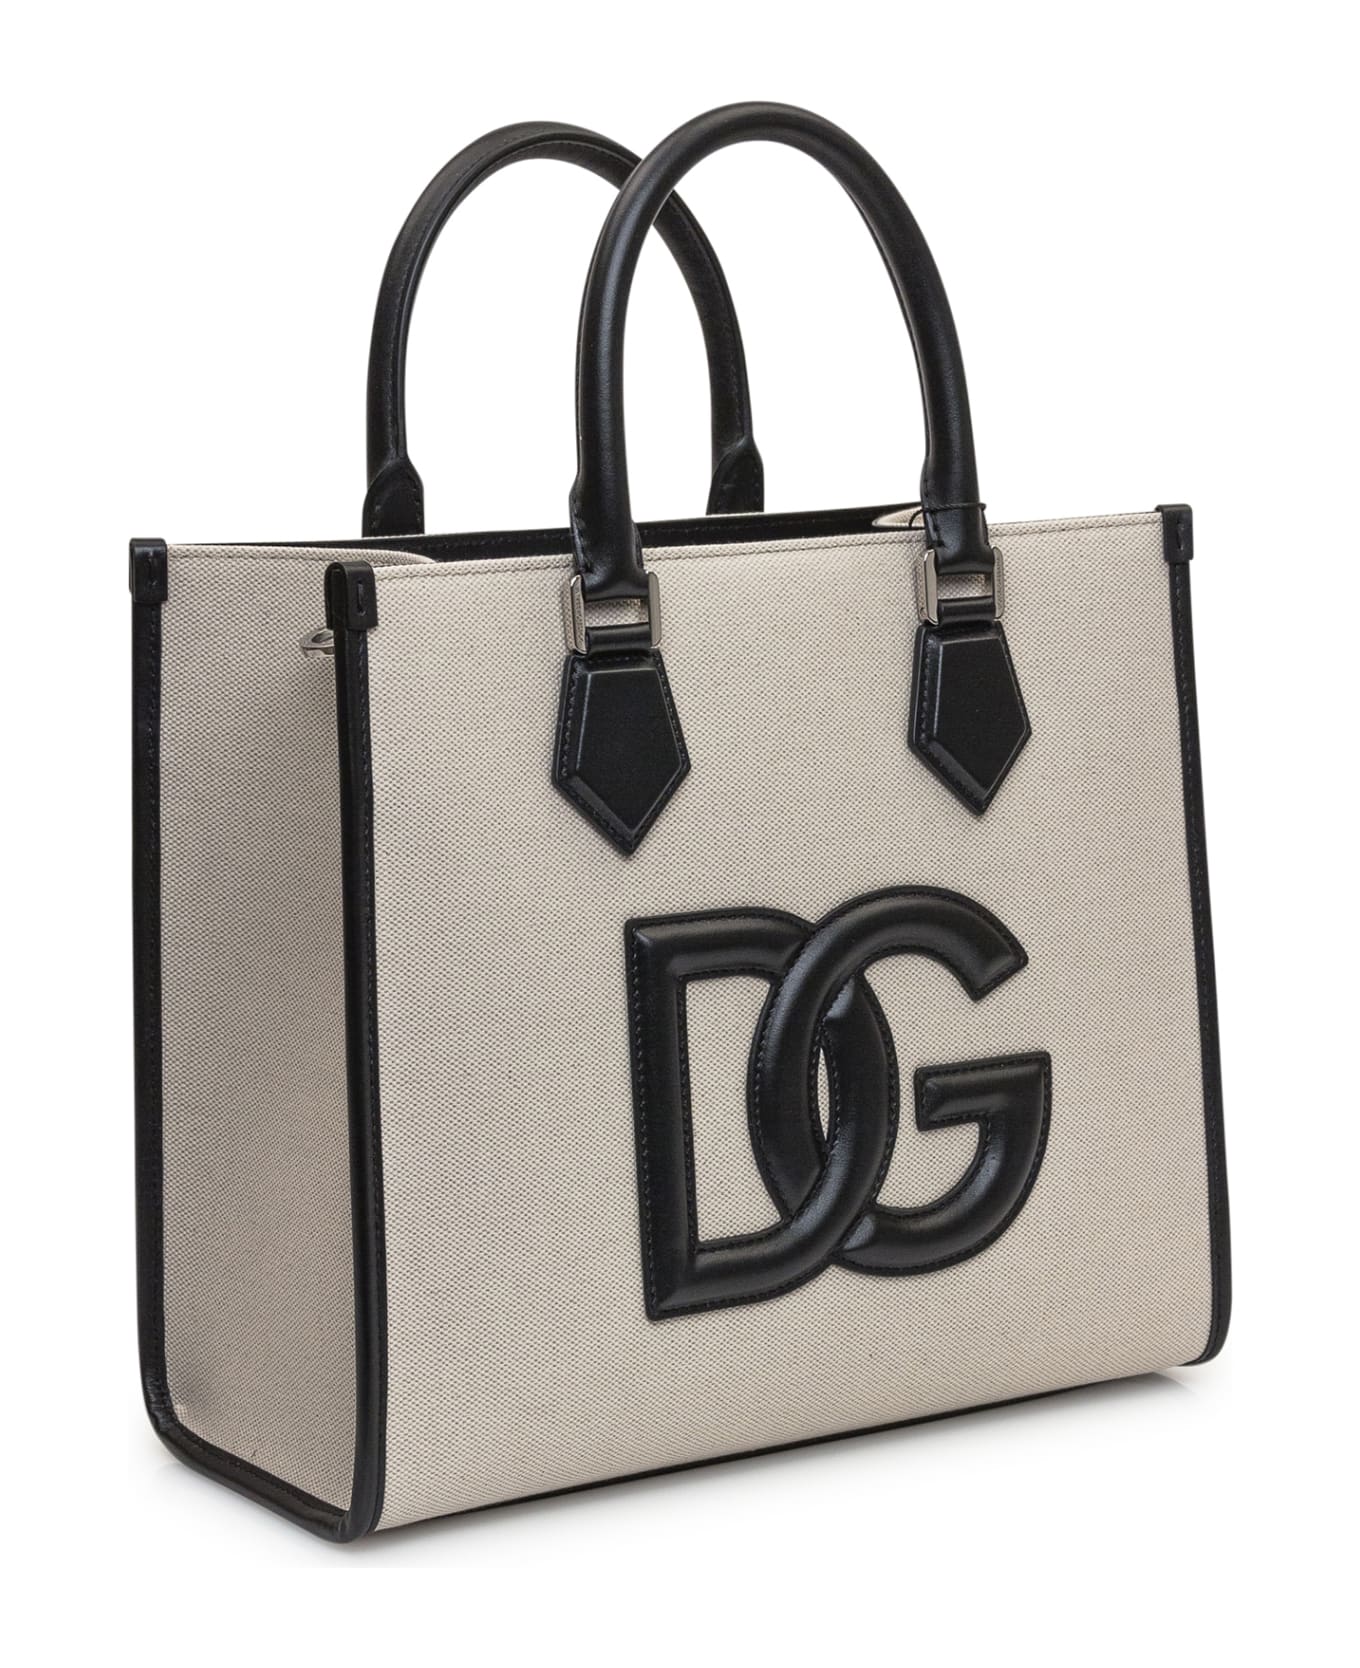 Dolce & Gabbana Shopping Bag - Avio